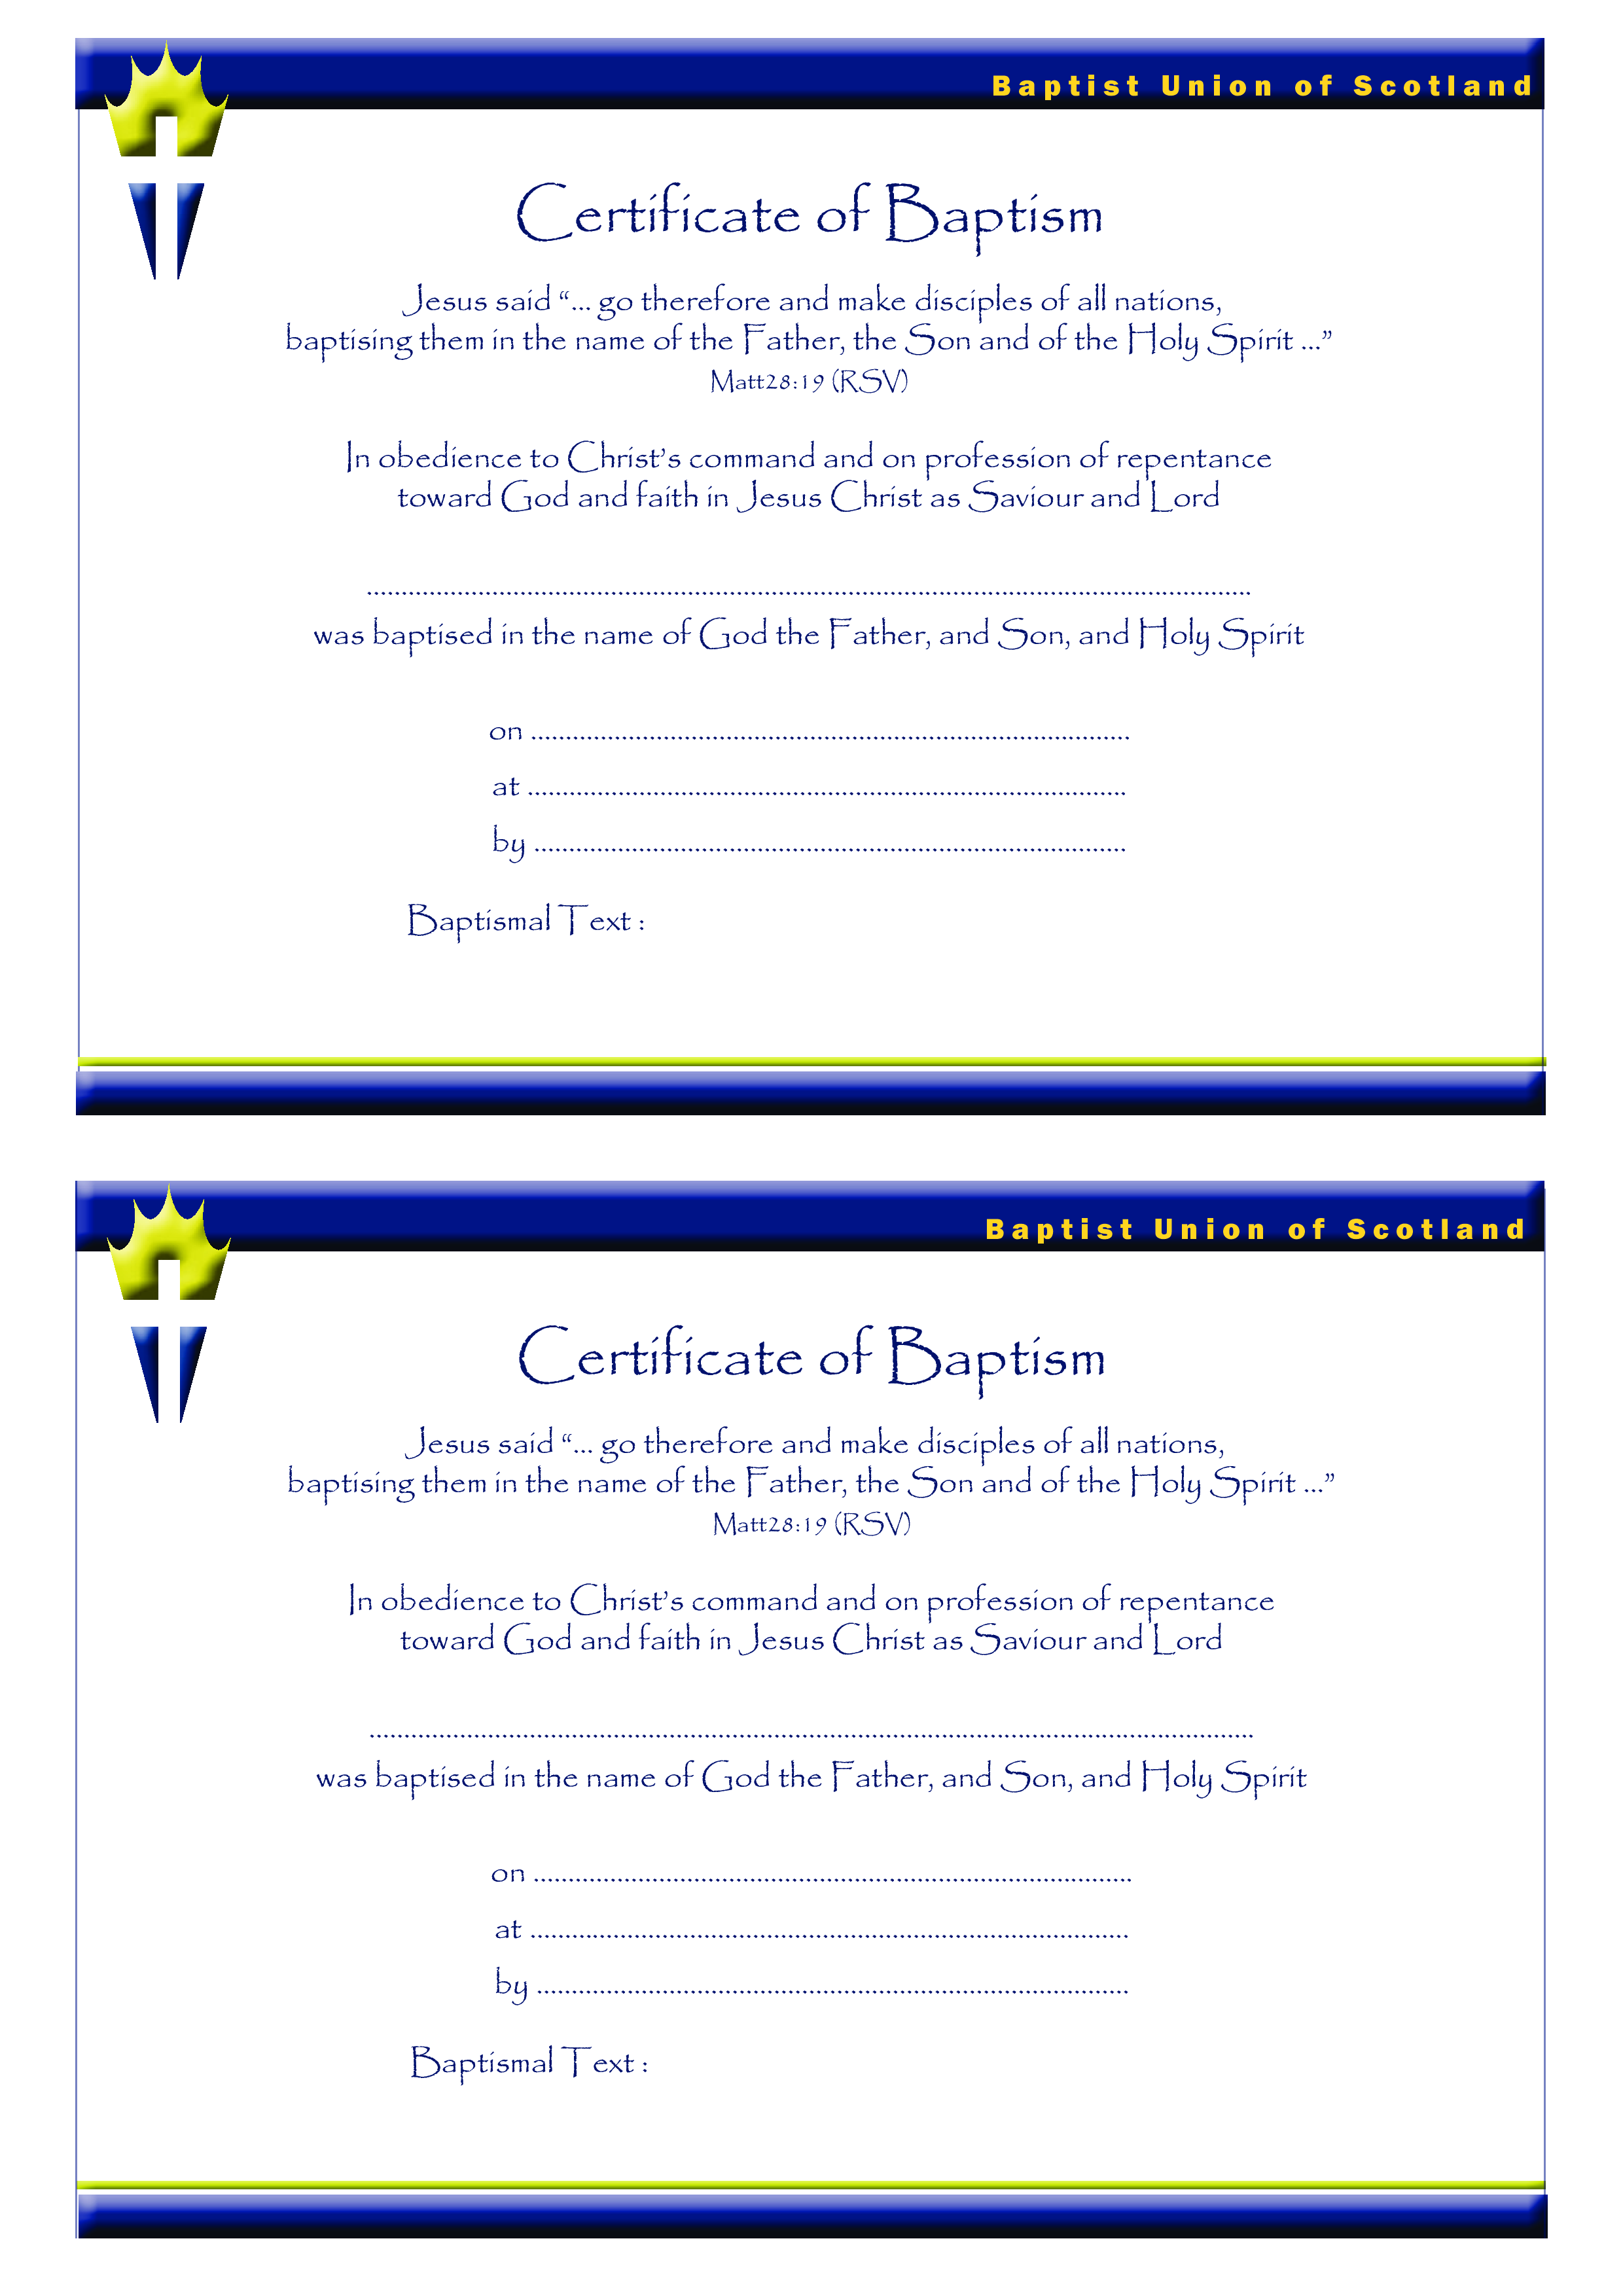 Certificate of Baptism Catholic main image